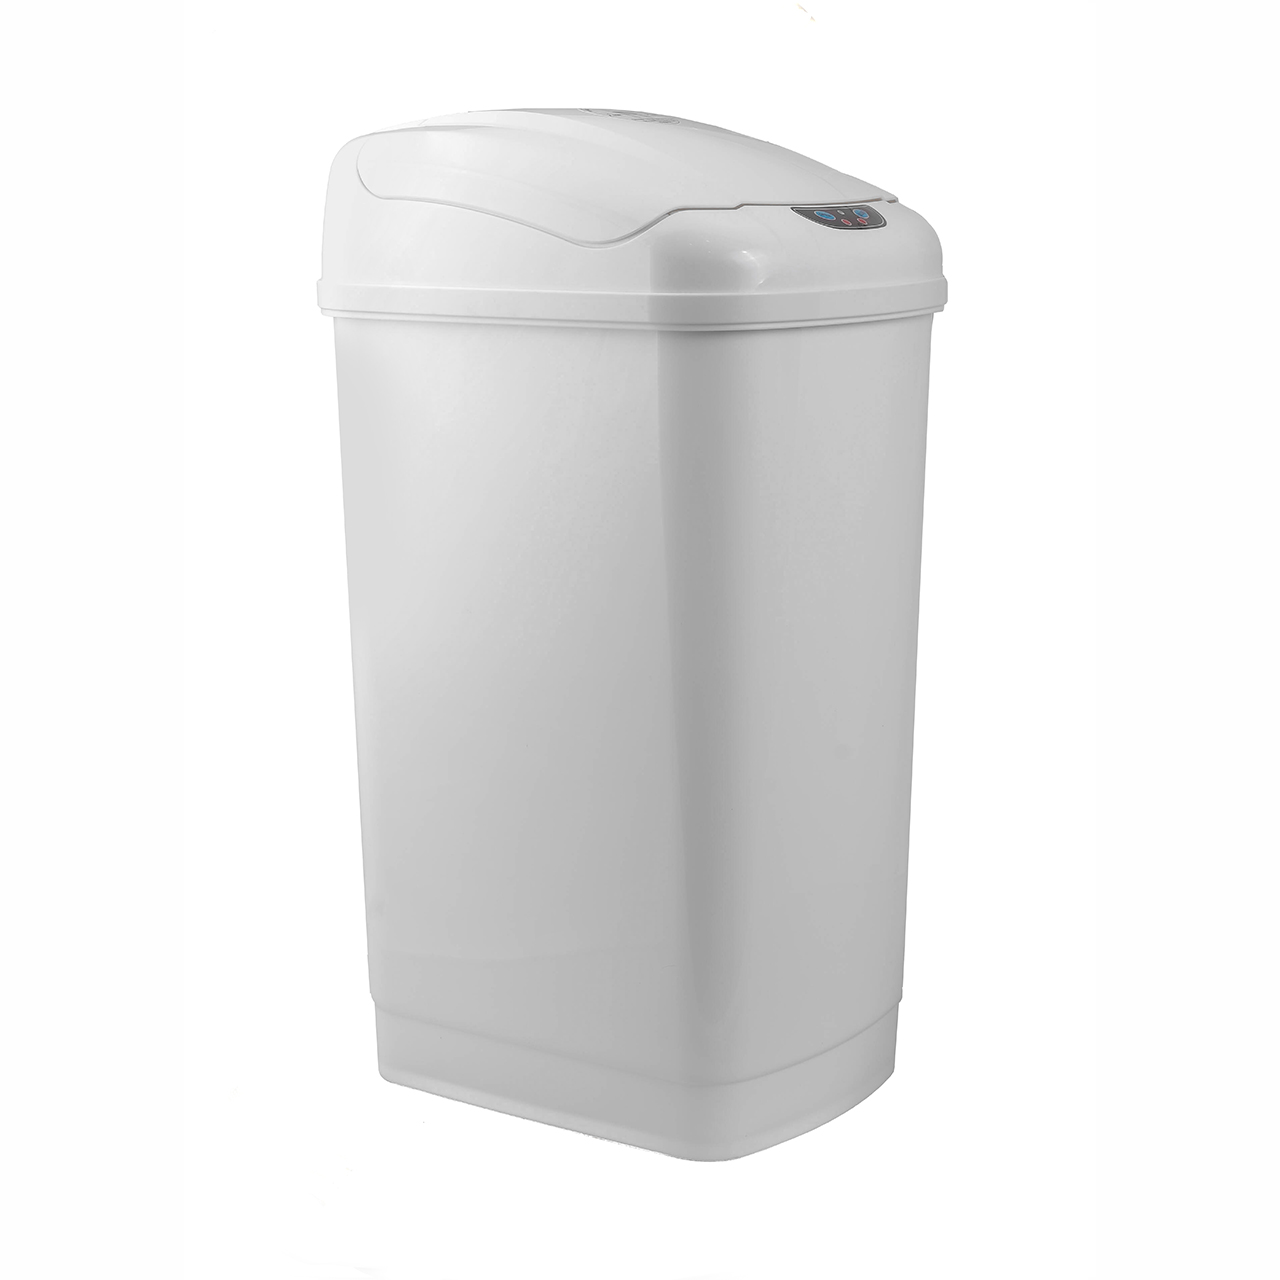 سطل زباله هوشمند ای ام دی مدل 27L